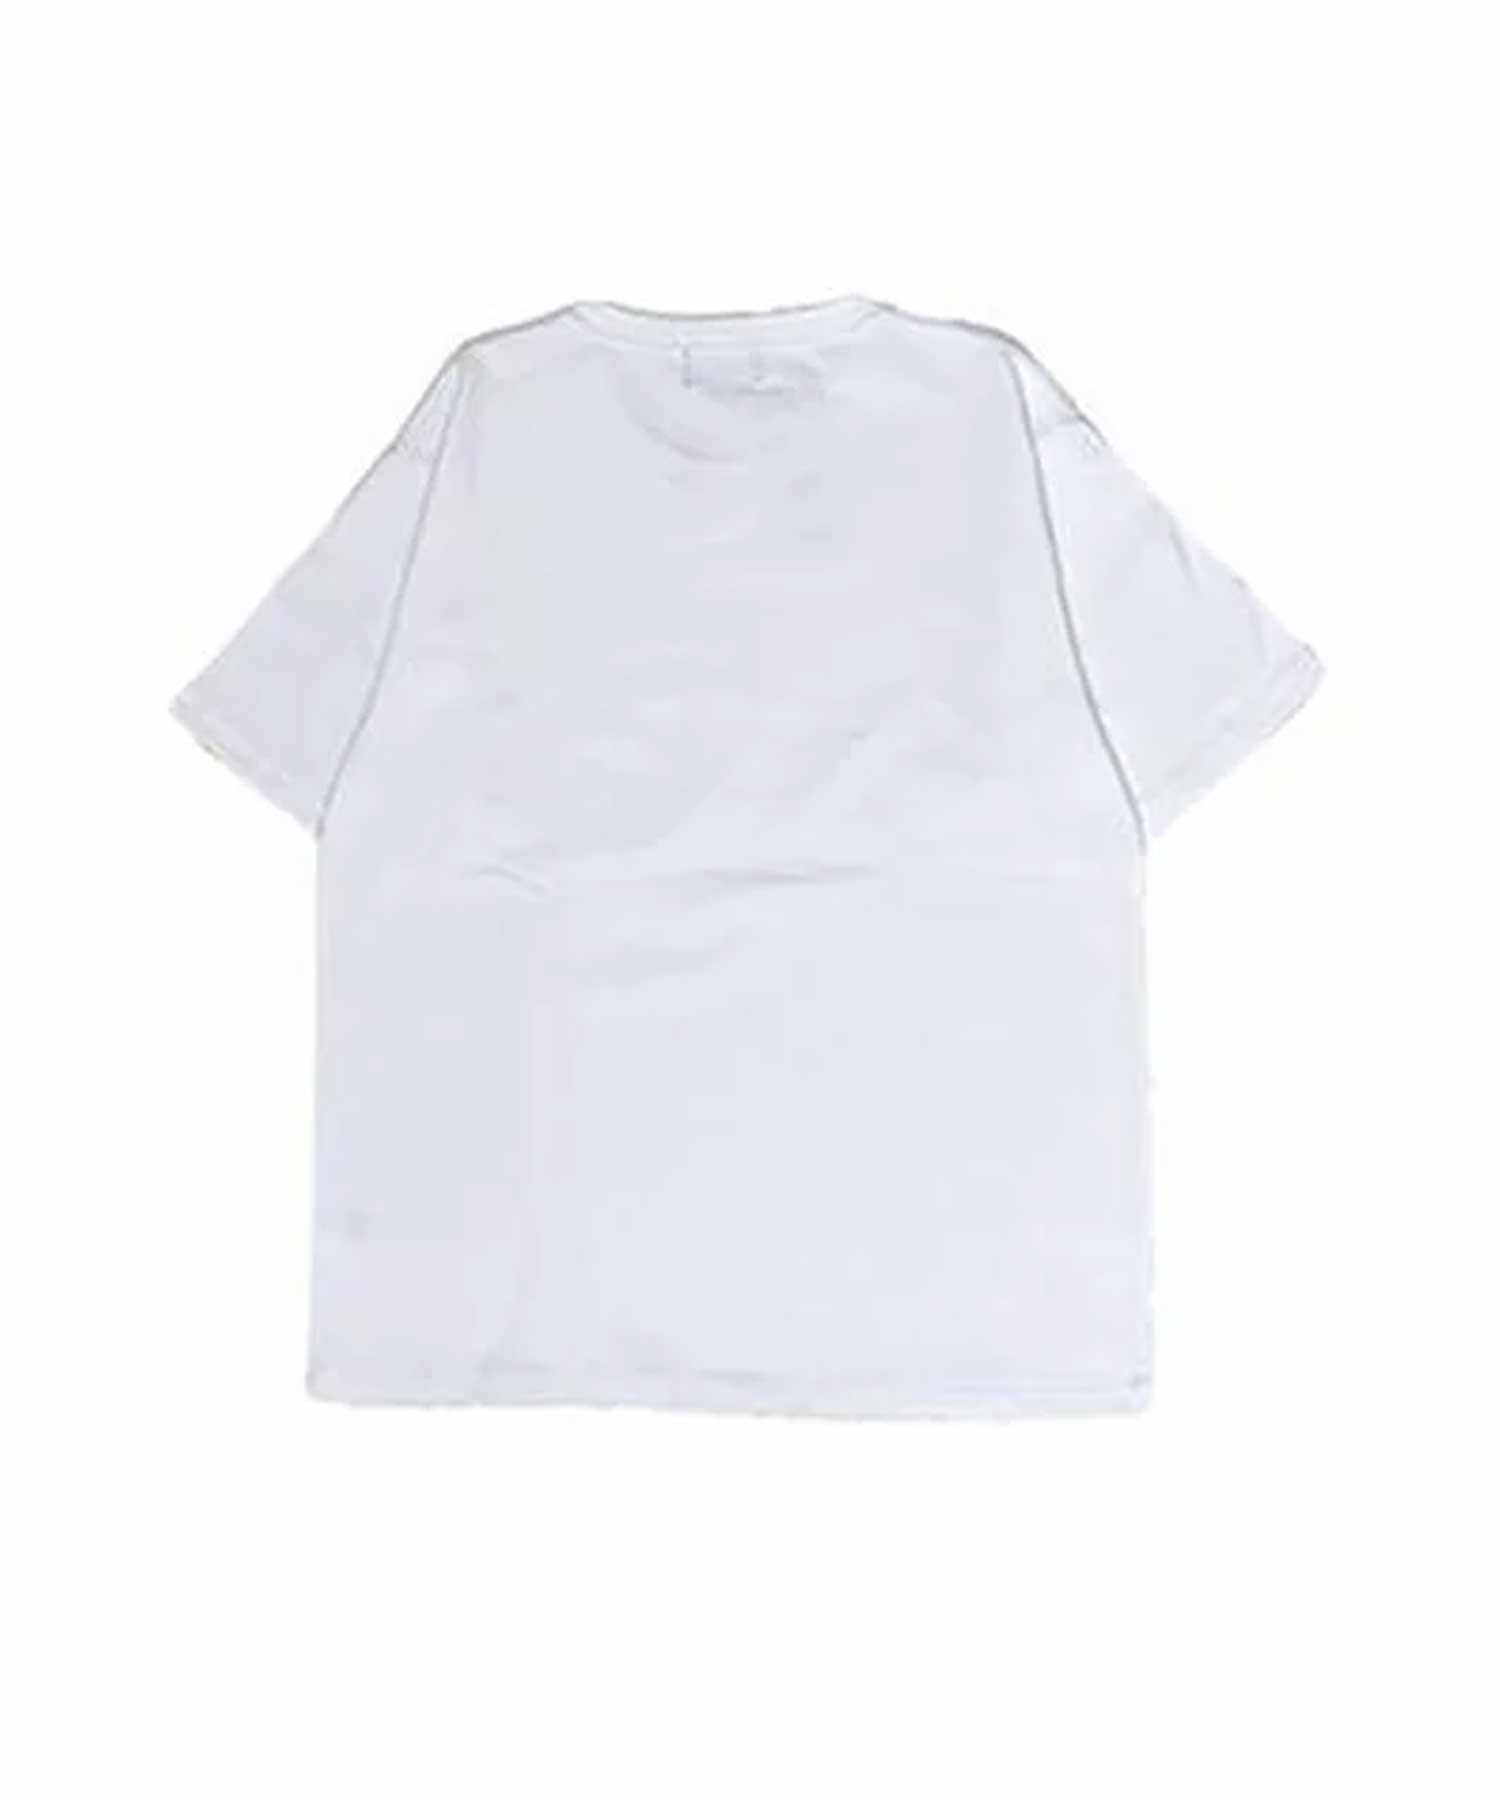 DEAR LAUREL/ディアローレル Tシャツ D21S2109(KHA-M)